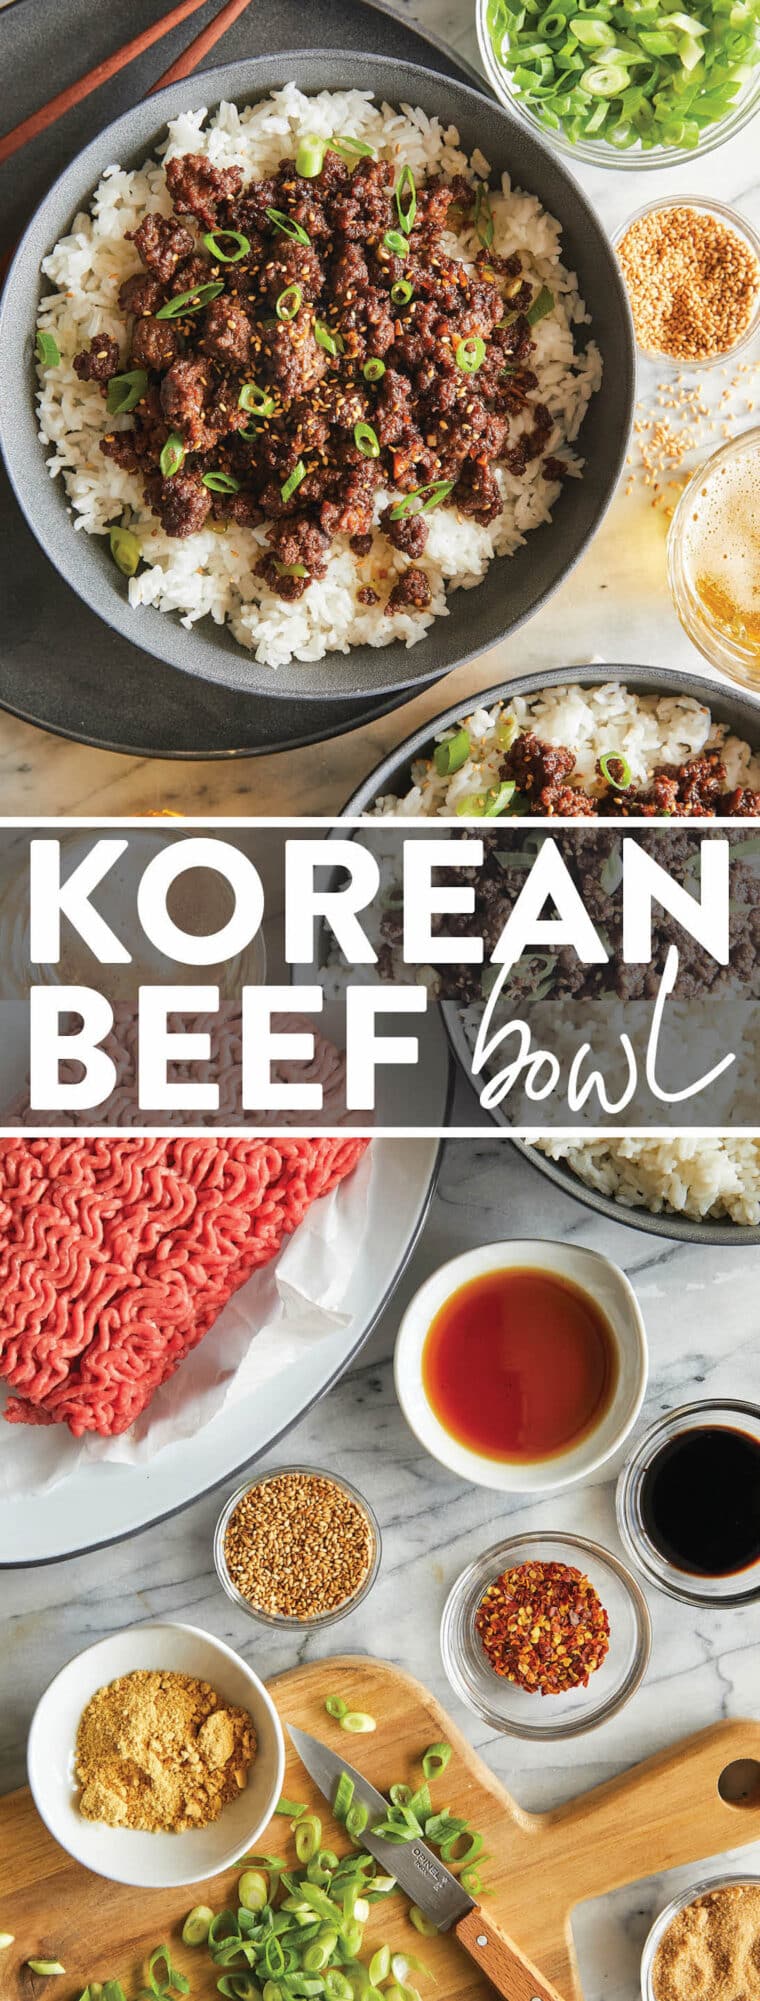 Korean Beef Bowl Meal Prep - Damn Delicious